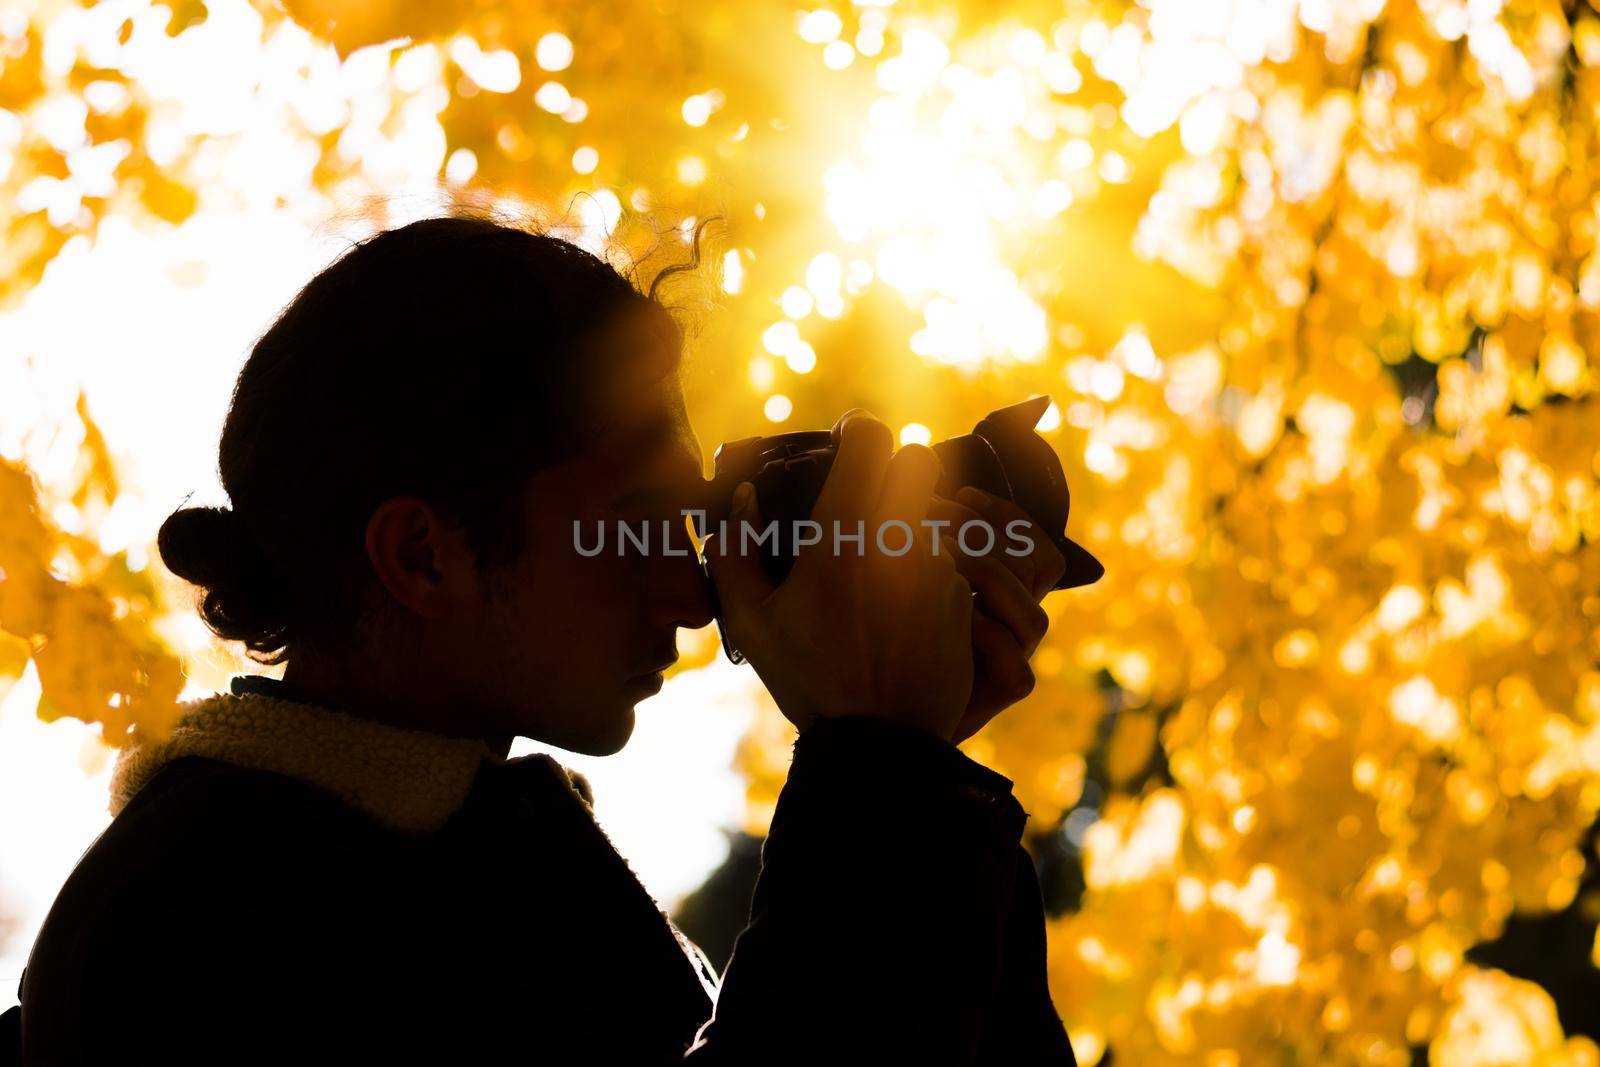 Autumn photoshoot. Nature photographer silhouette by VitaliiPetrushenko